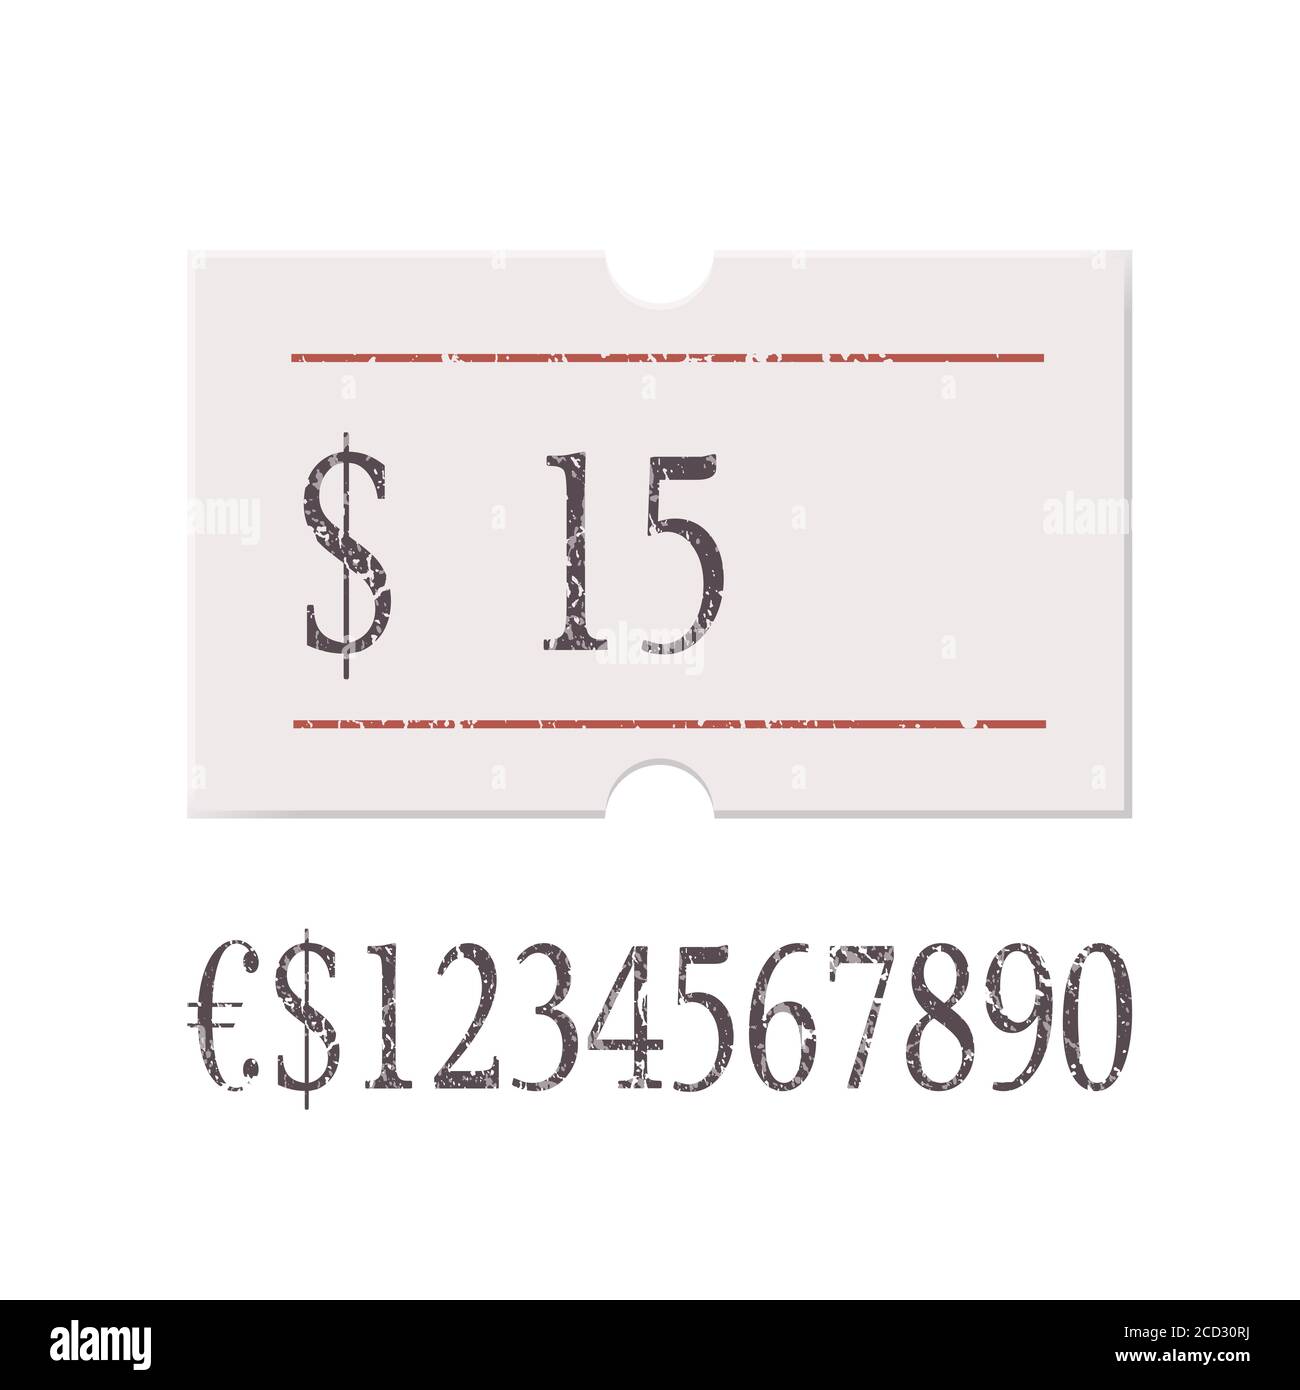 Etichetta prezzo USD con numero di cifre isolato su sfondo bianco. Adesivo, etichetta, badge vuoti per prodotti e prodotti diversi. Realistico Illustrazione Vettoriale